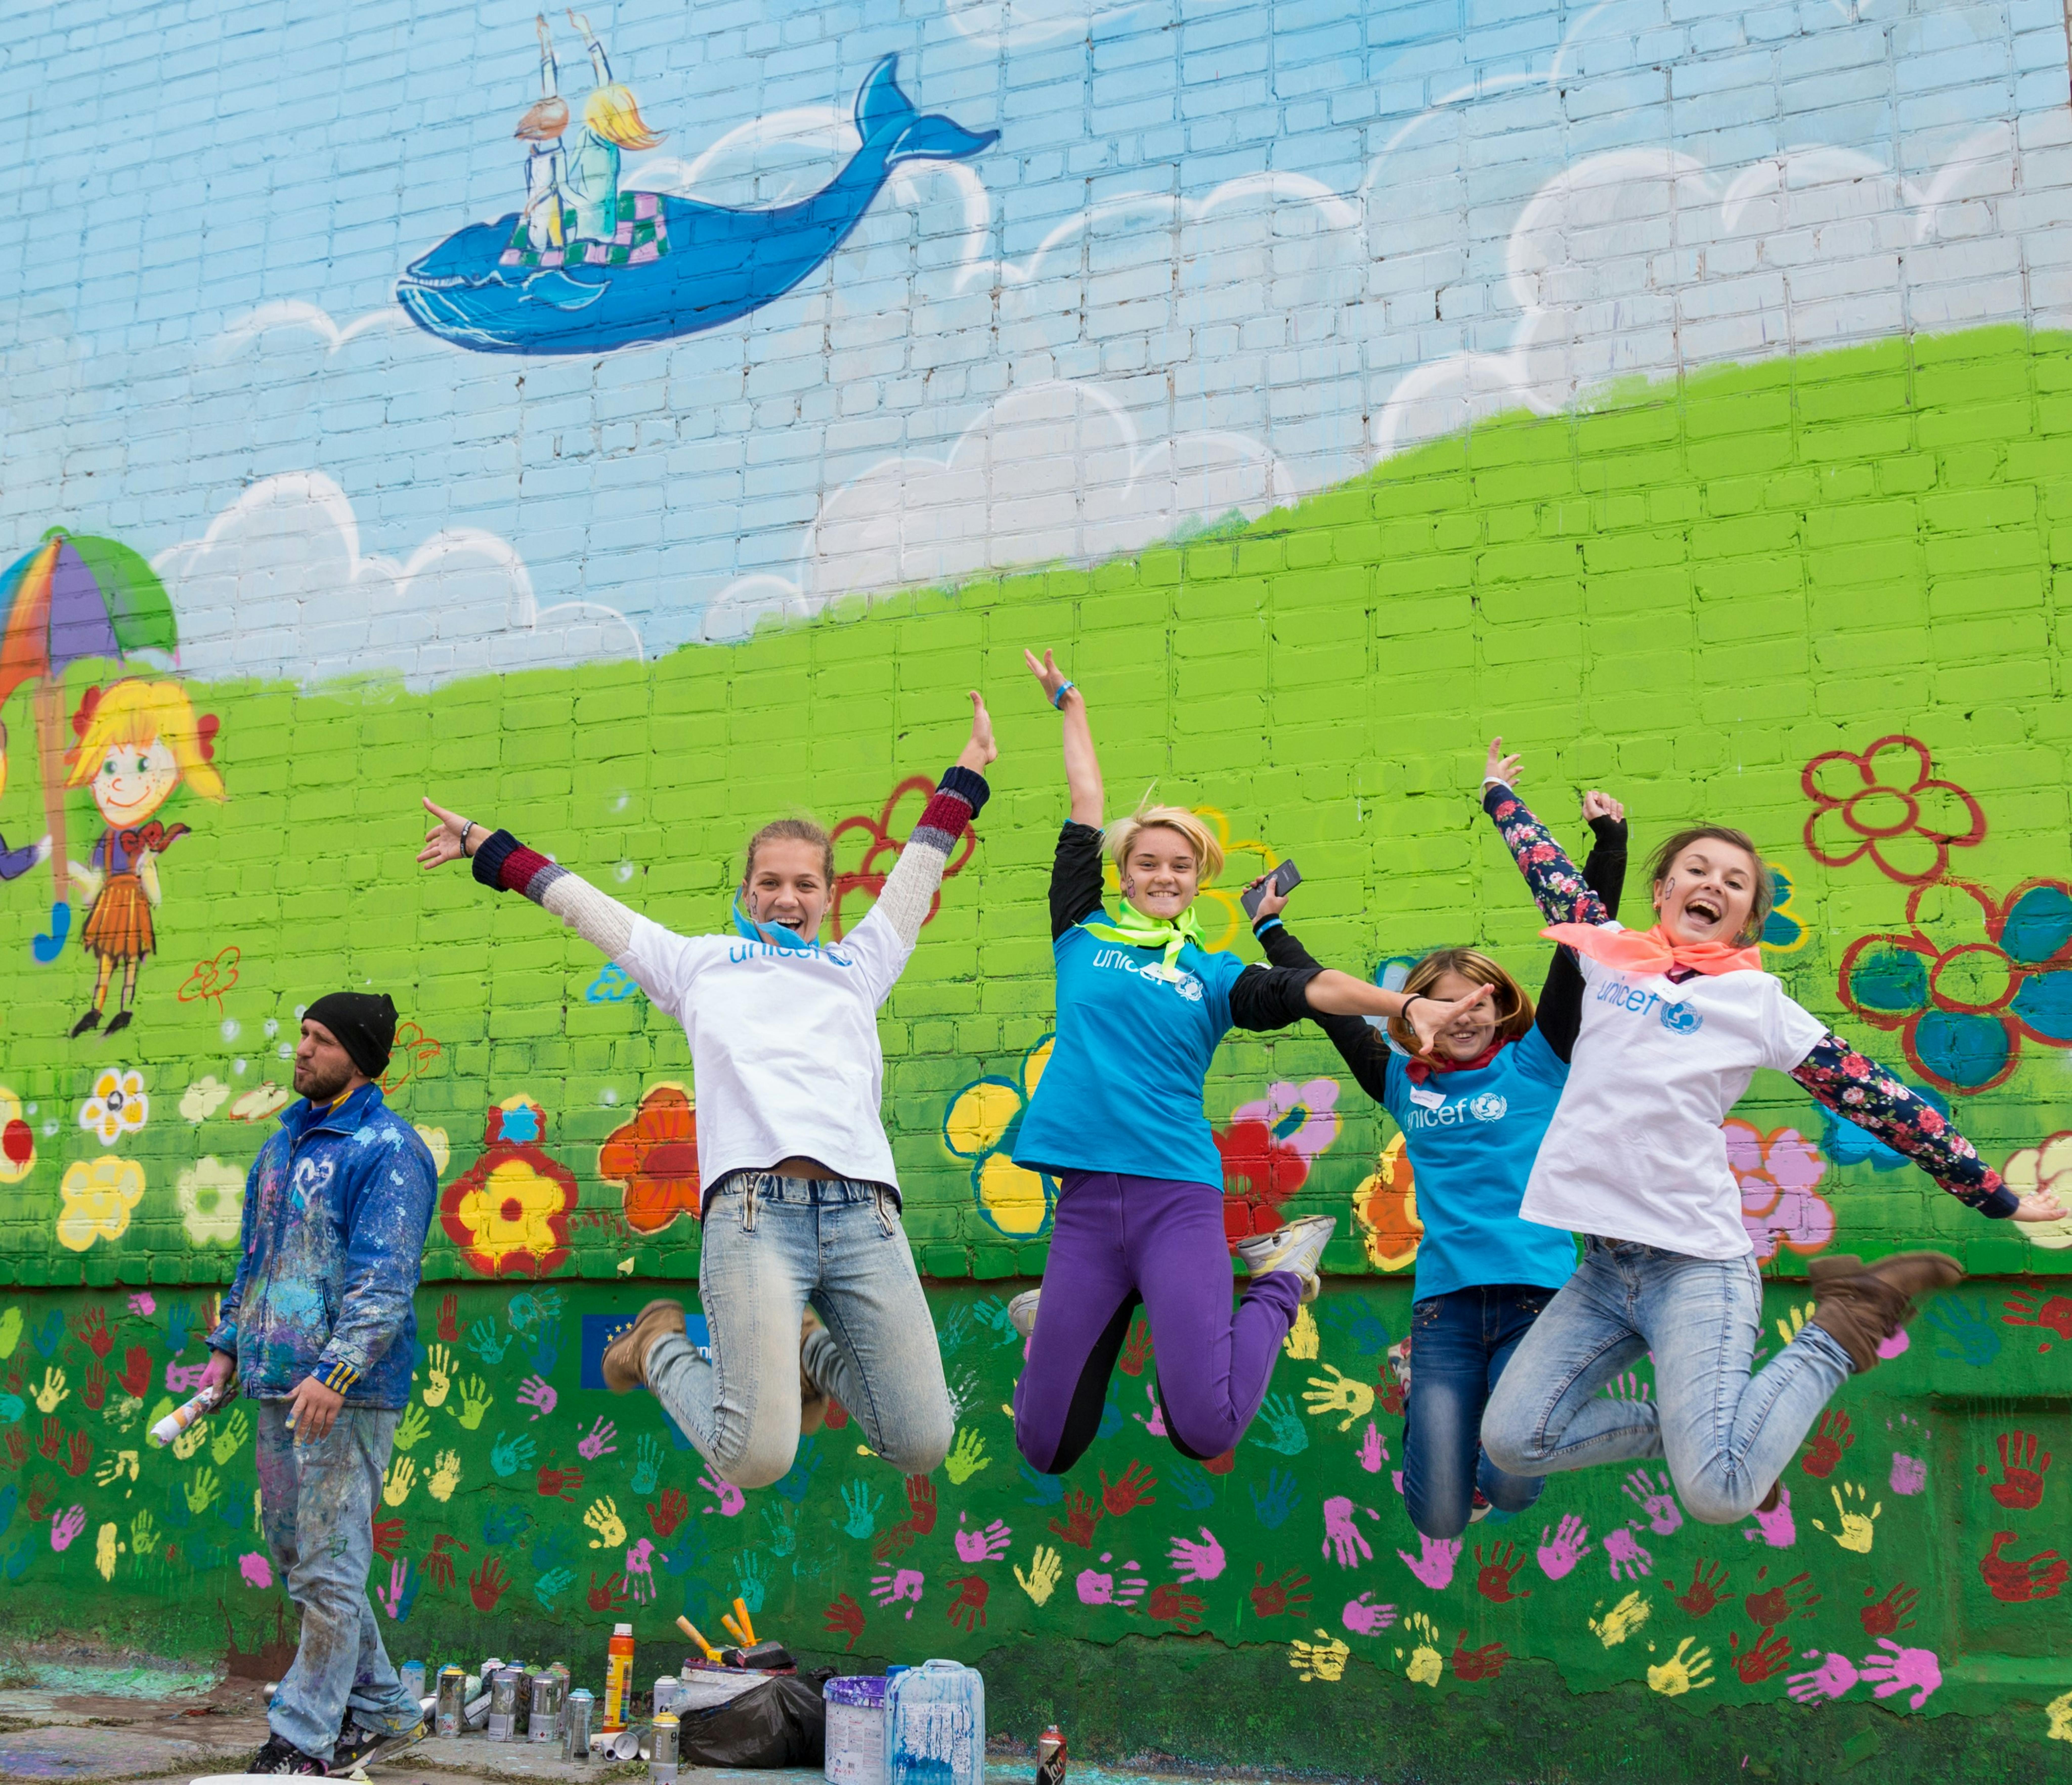 Ucraina: nel 2016 un gruppo di ragazzi ha creato un murales a Luhanks nell'ambito del progetto Life Skills Education and Psychosocial Support, supportato dall'UNICEF per i ragazzi colpiti dal conflitto